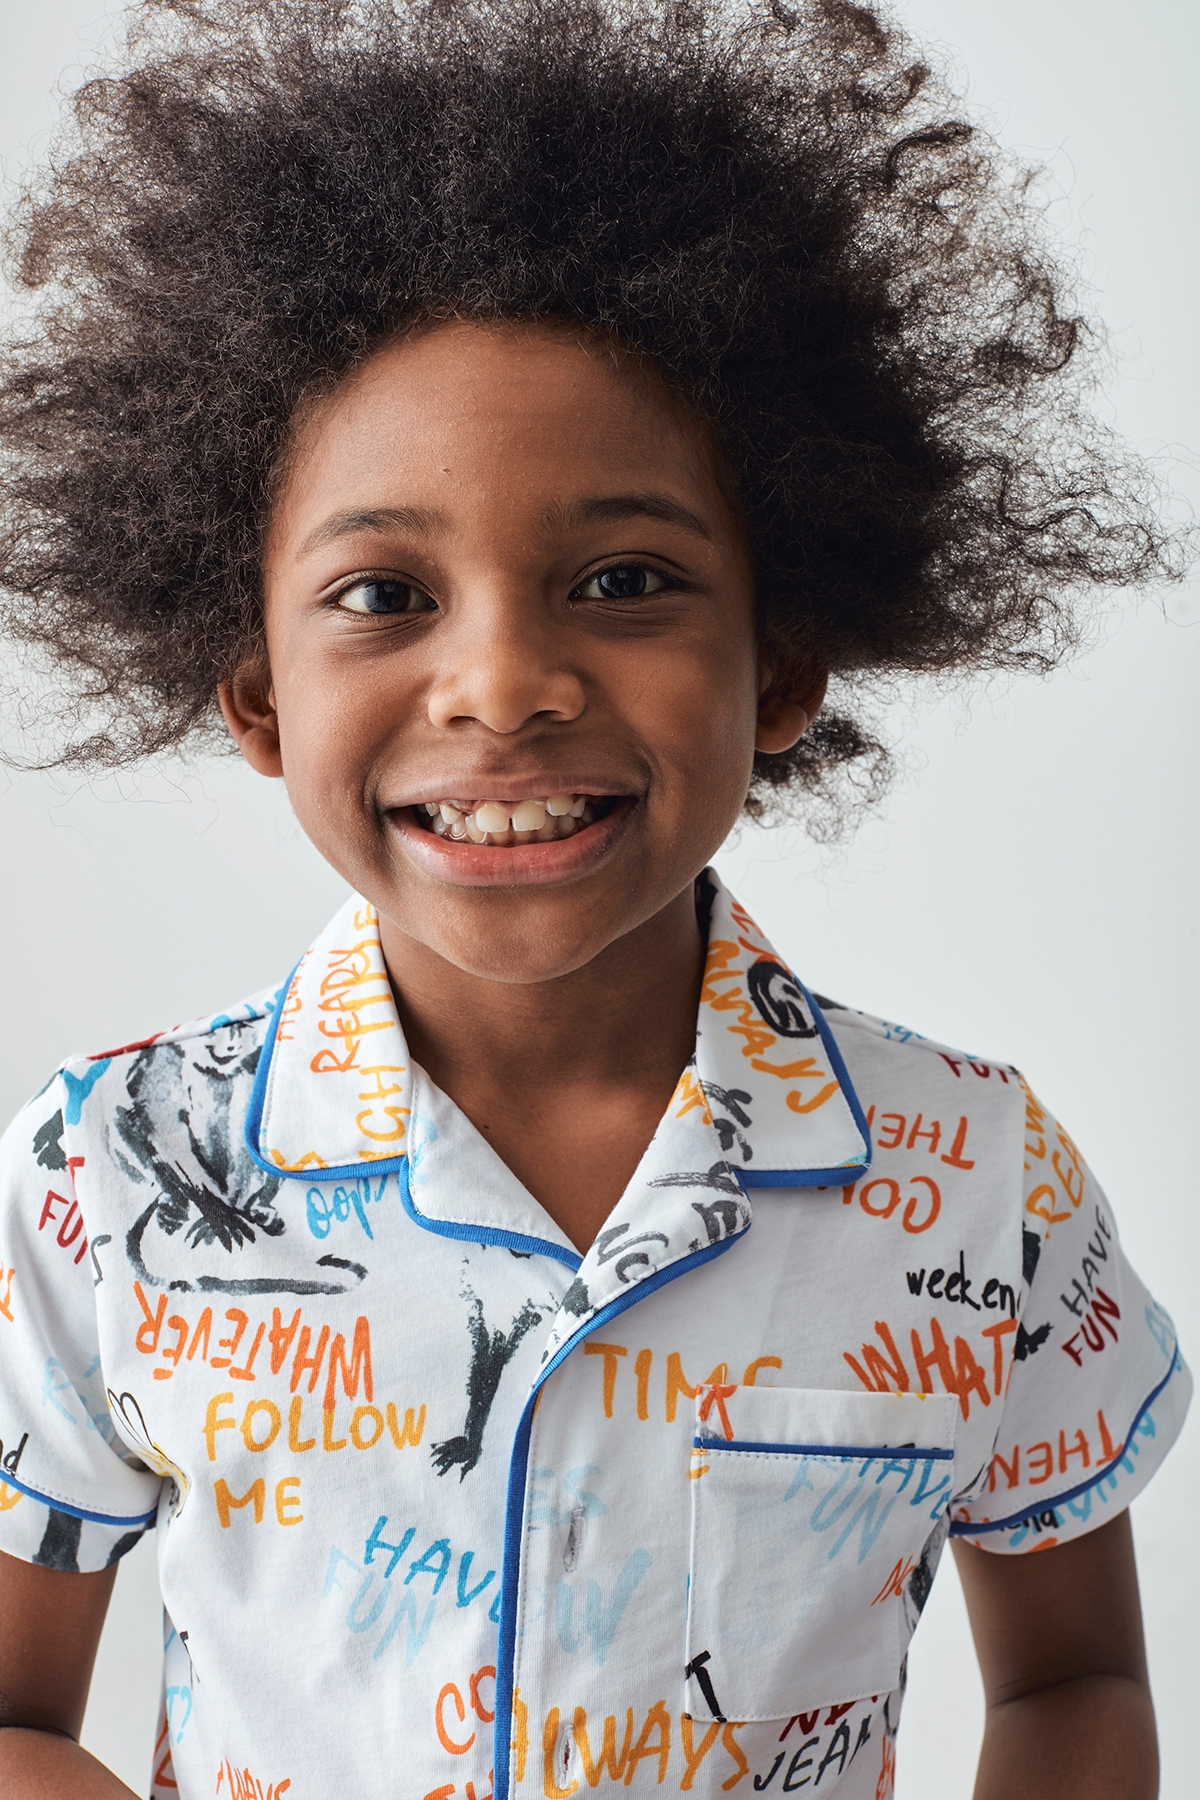 Erkek Çocuk Desenli Pijama Takımı